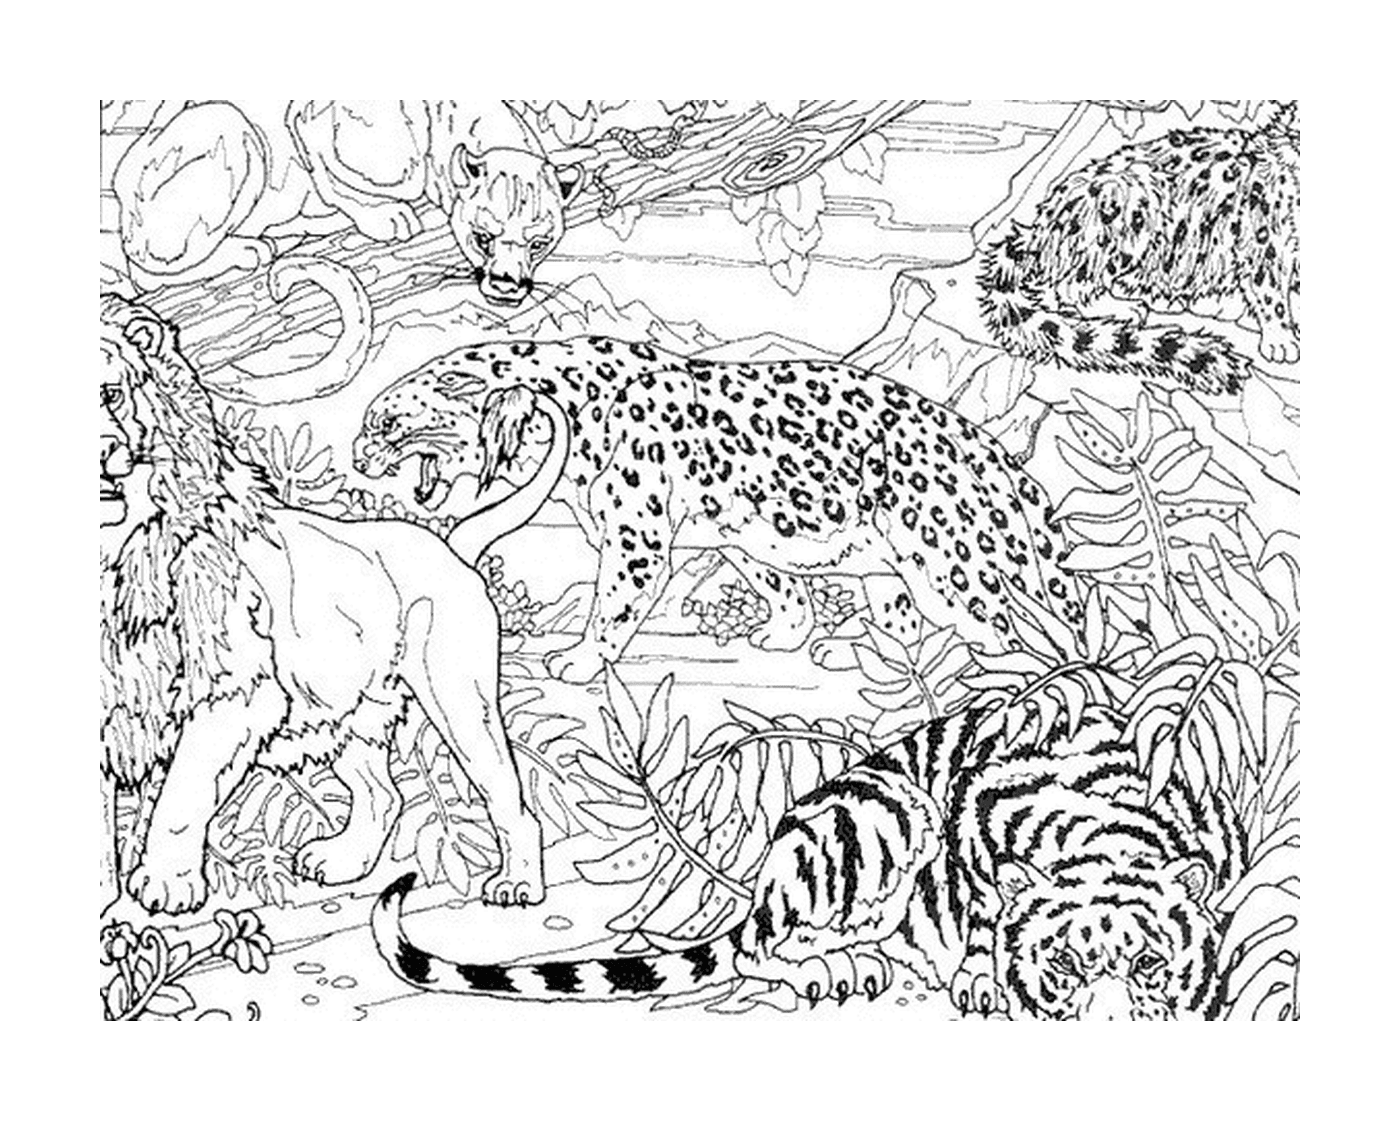  Ein Leopard und zwei Tiger im Dschungel 